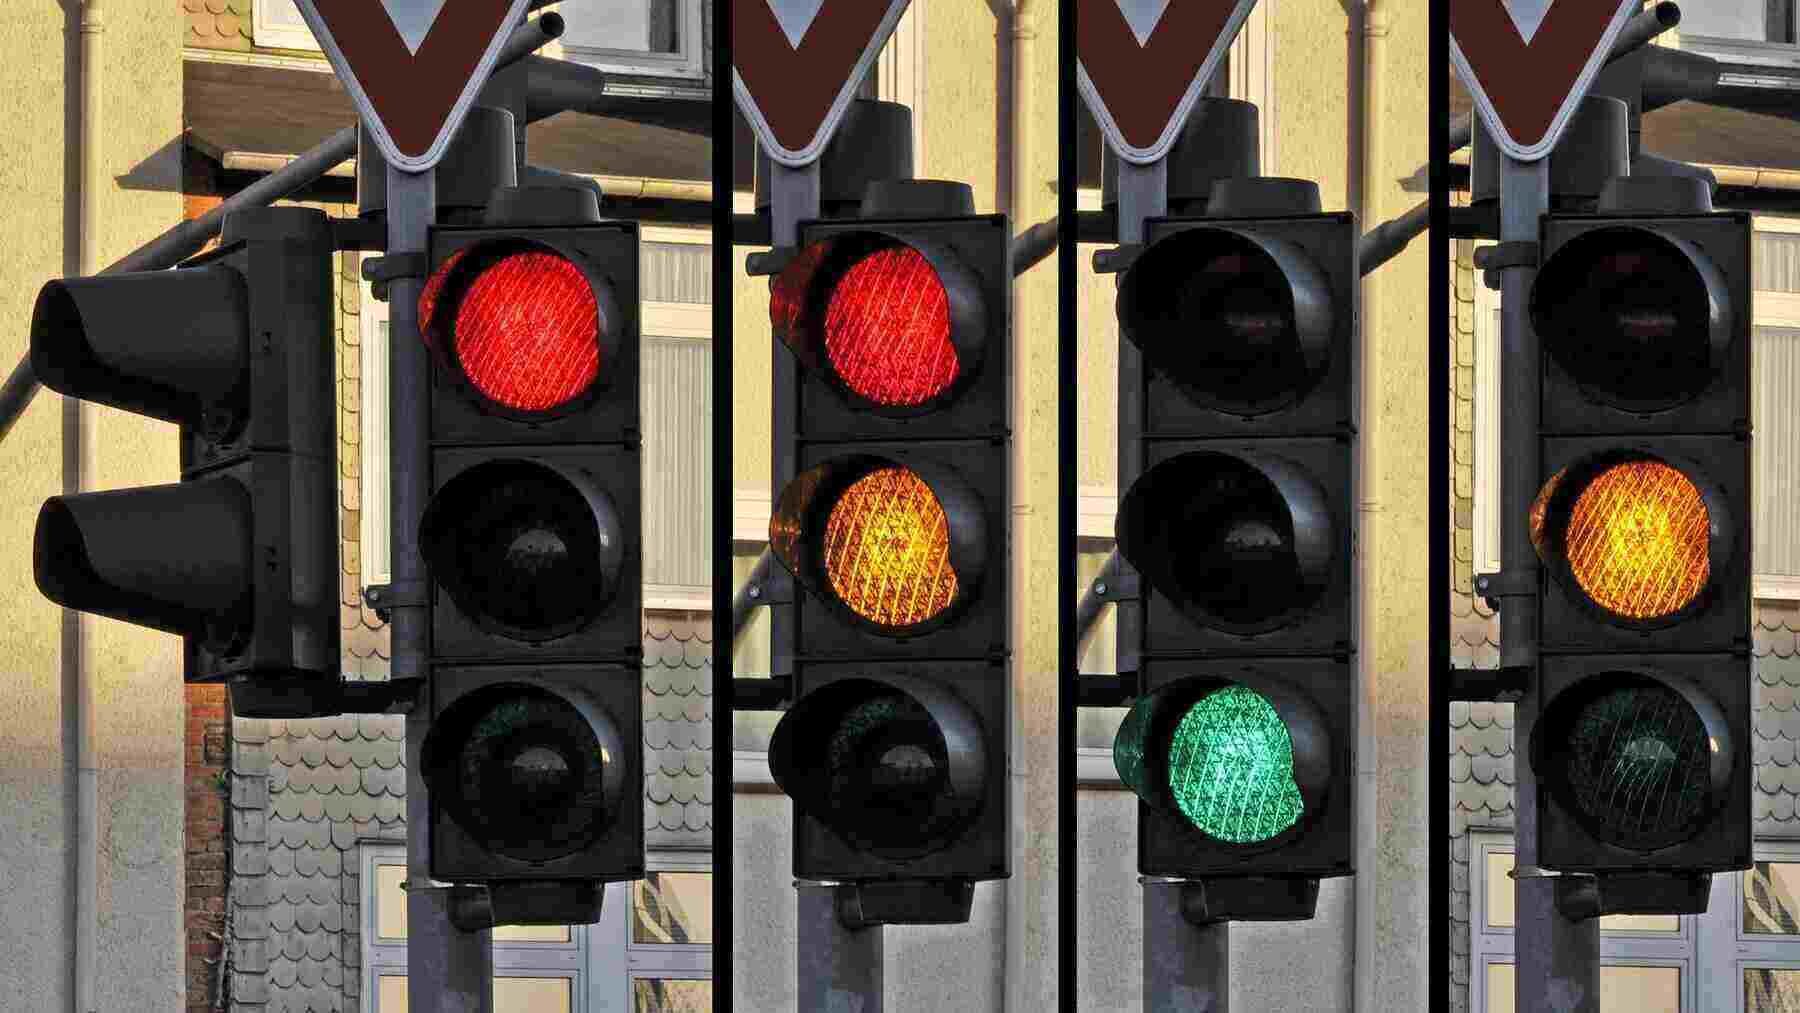 El semáforo en ámbar es una de las 3 posiciones posibles.